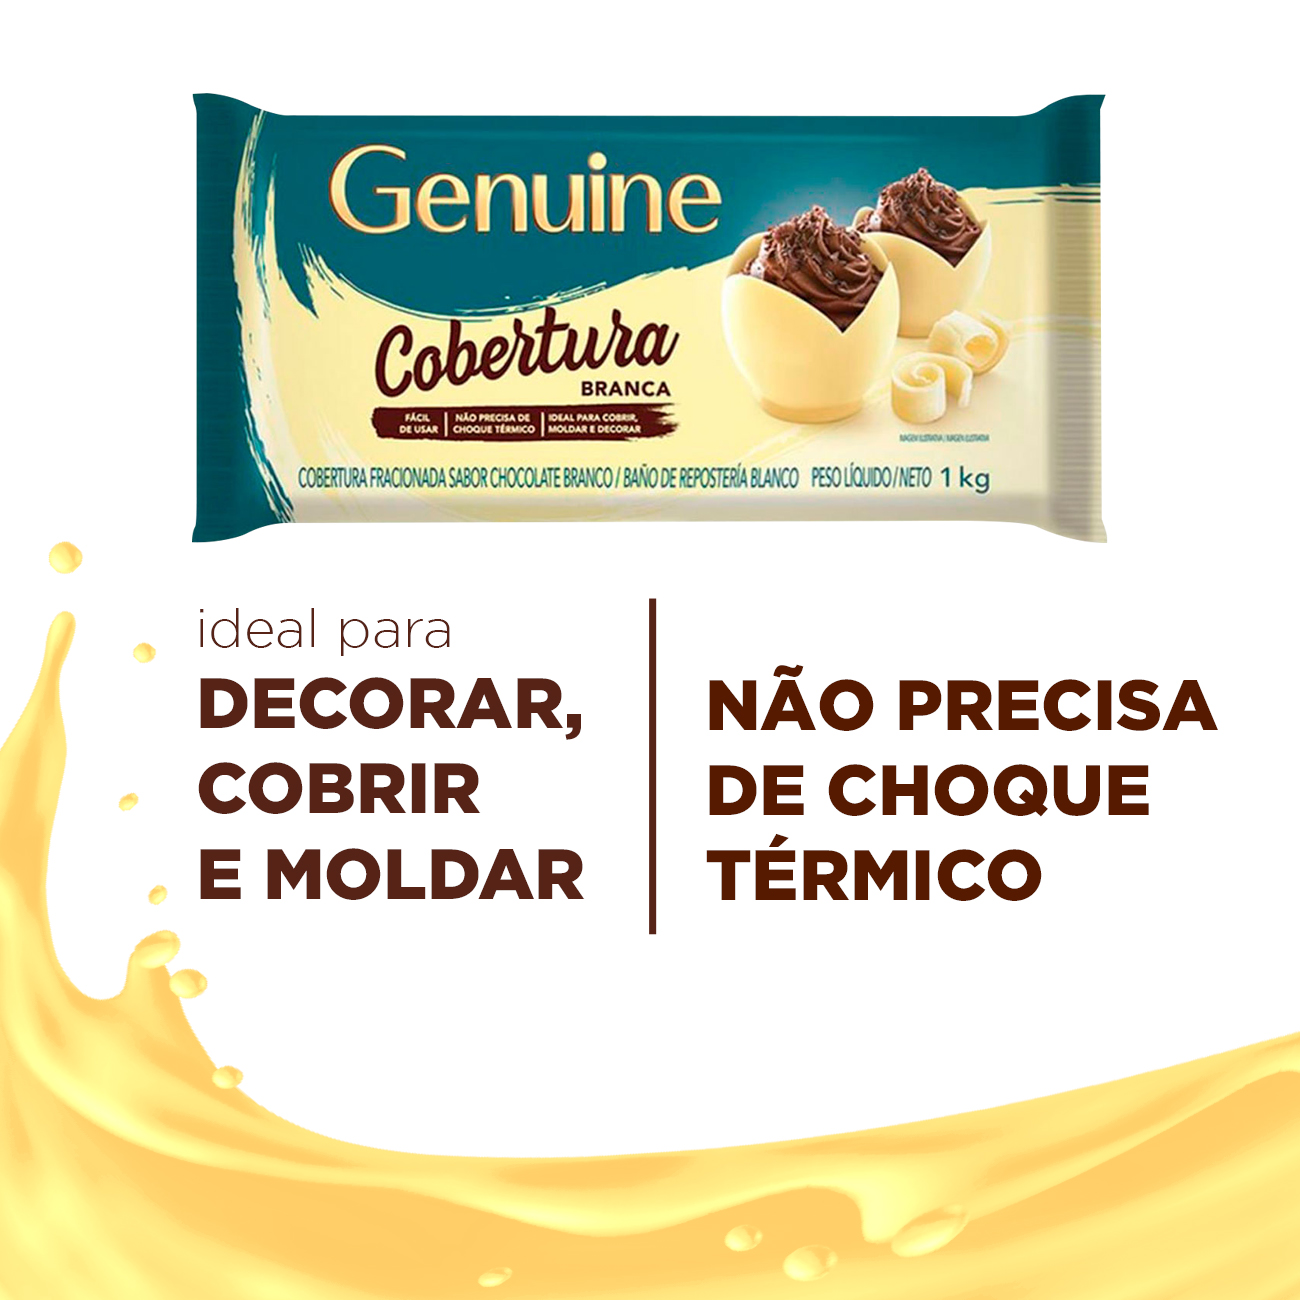 Cobertura de Chocolate em Barra Cargill Genuine Fracionada Branco 1kg | Caixa com 10 Unidades